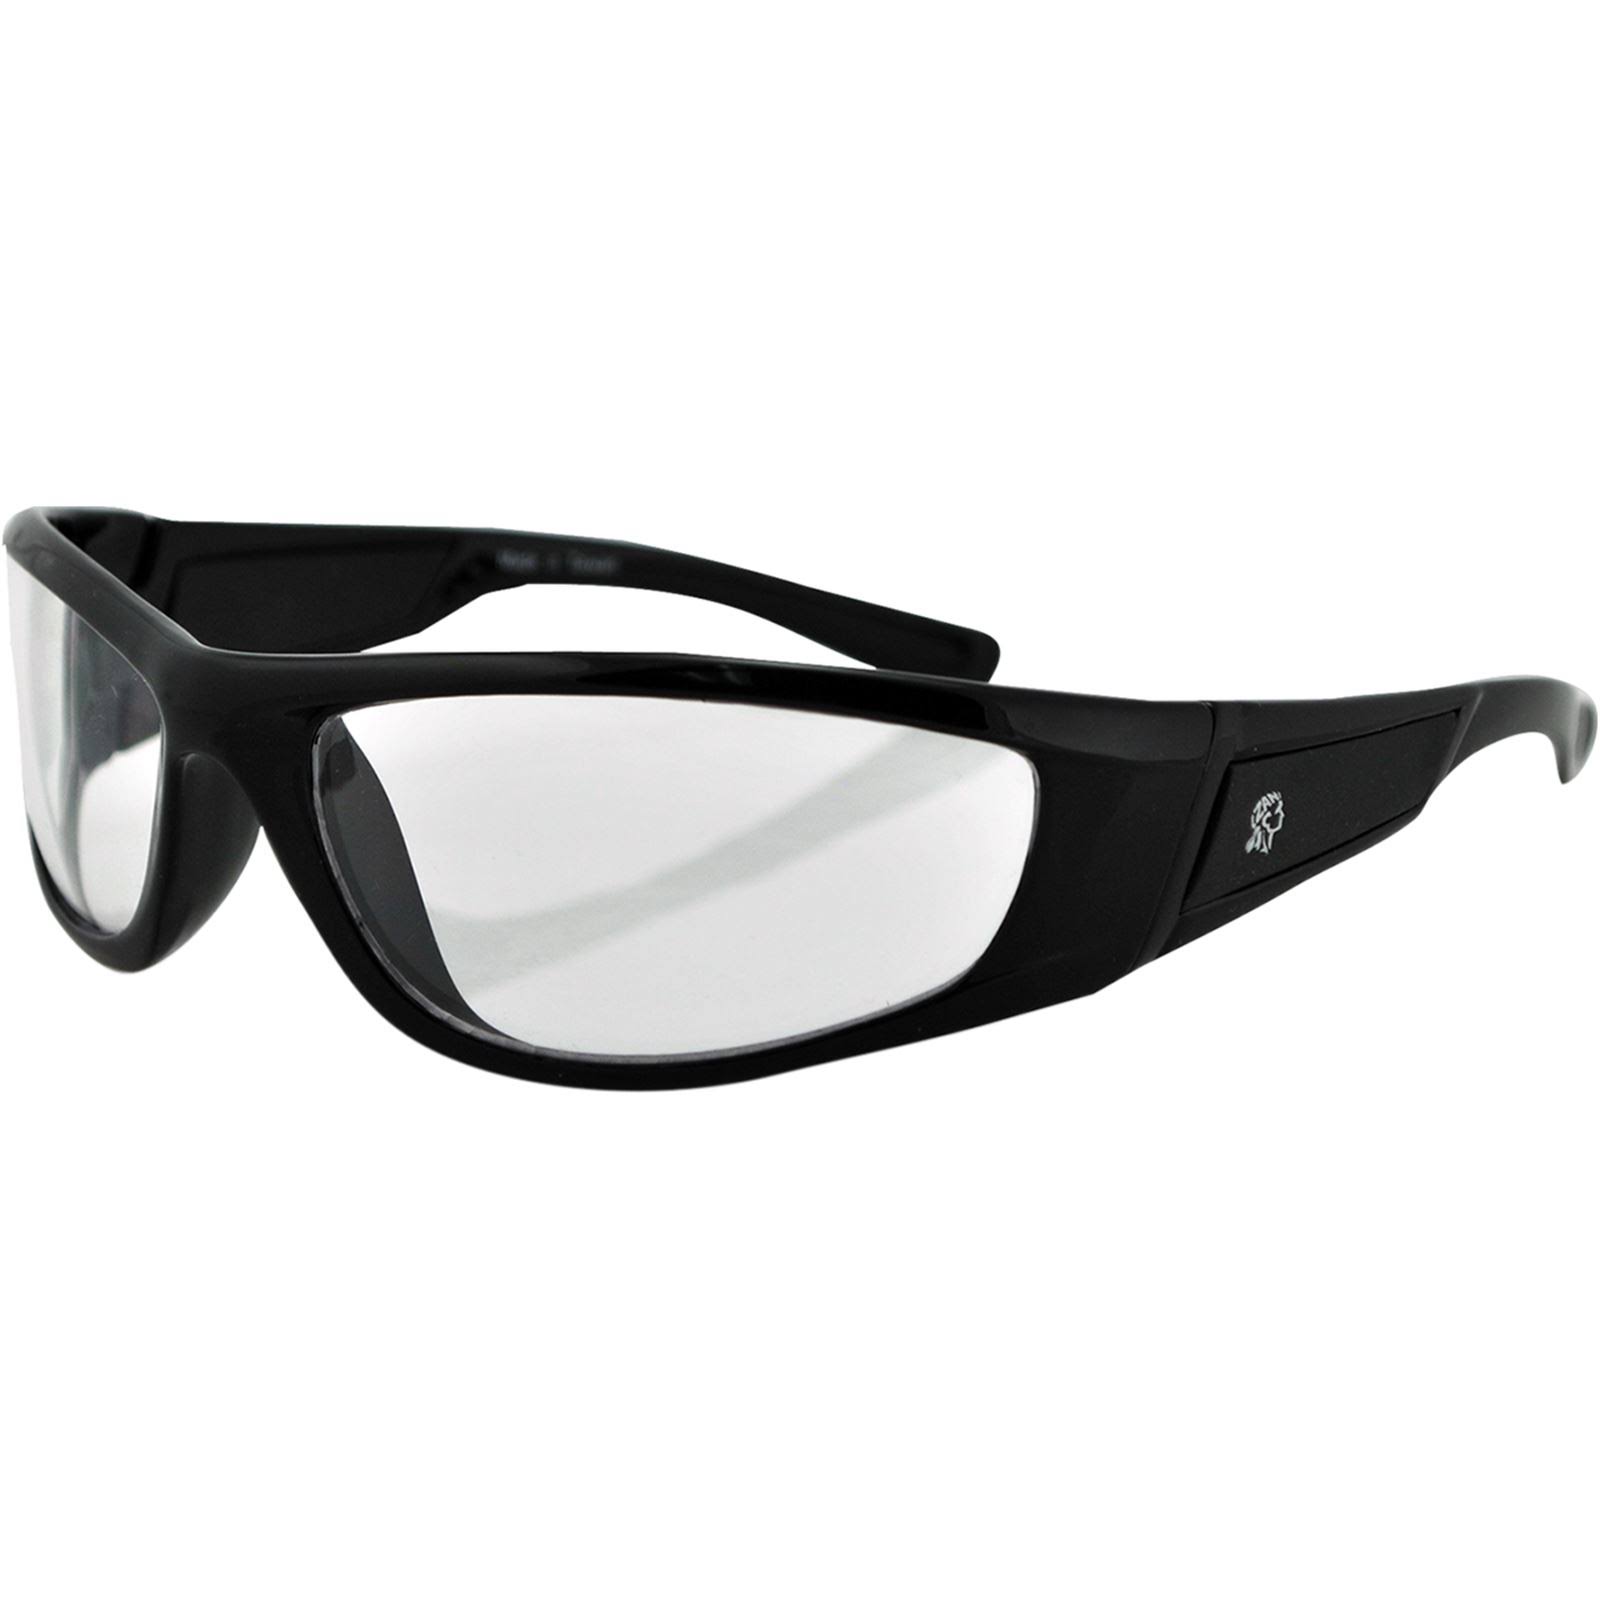 Zan Headgear Iowa Sunglasses Clear, Black